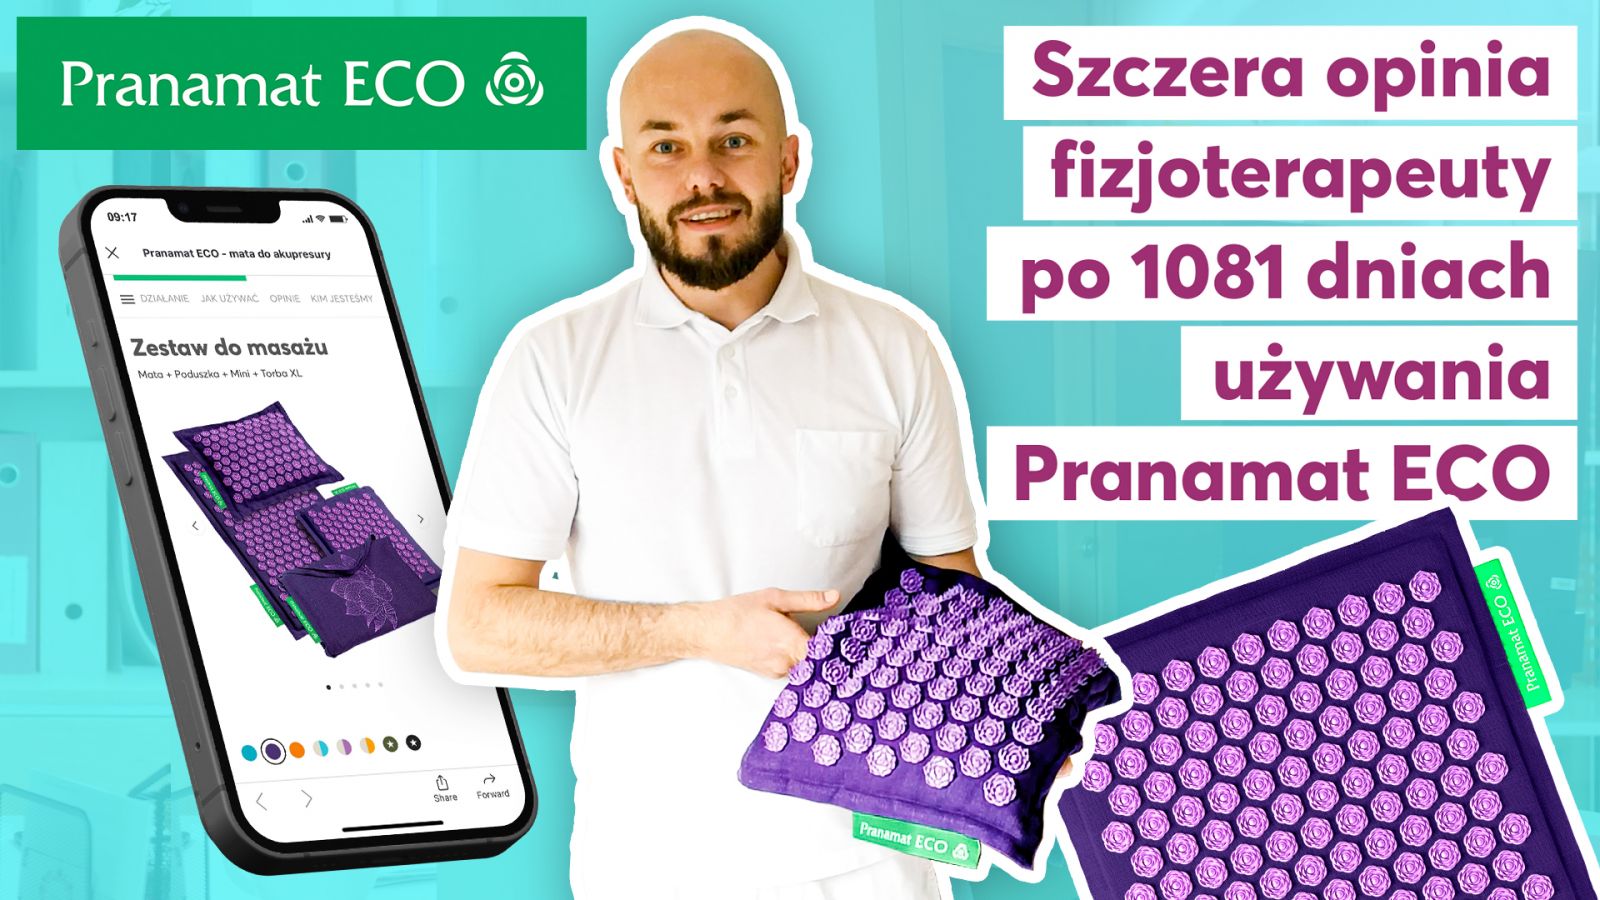 Fizjoterapeuta Krzysztof o codziennym używaniu Pranamat ECO